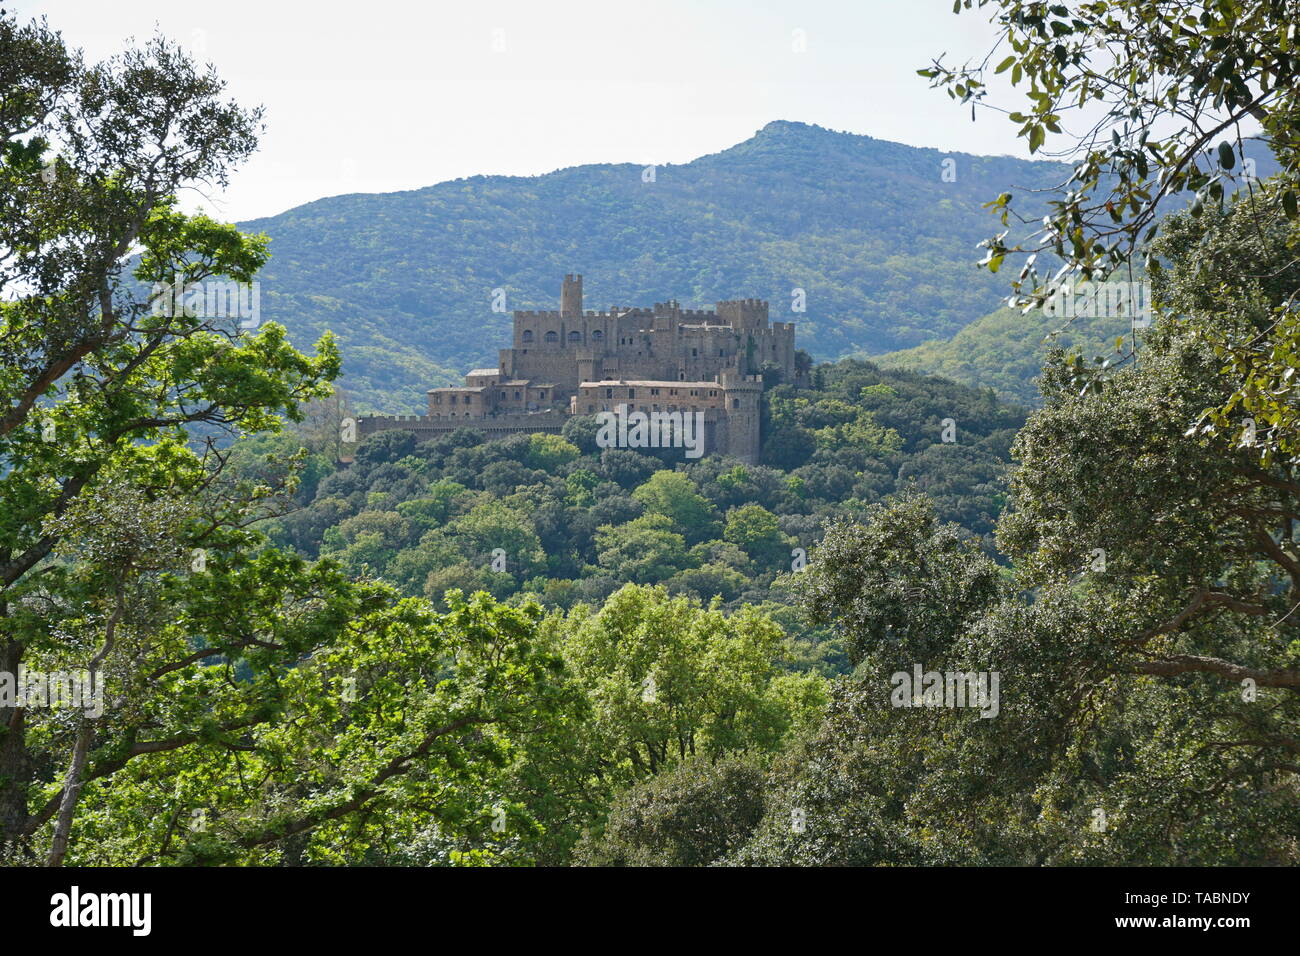 Requesens château entouré d'une forêt, massif de l'Albera, Alt Emporda, Gérone province, Catalogne, Espagne Banque D'Images